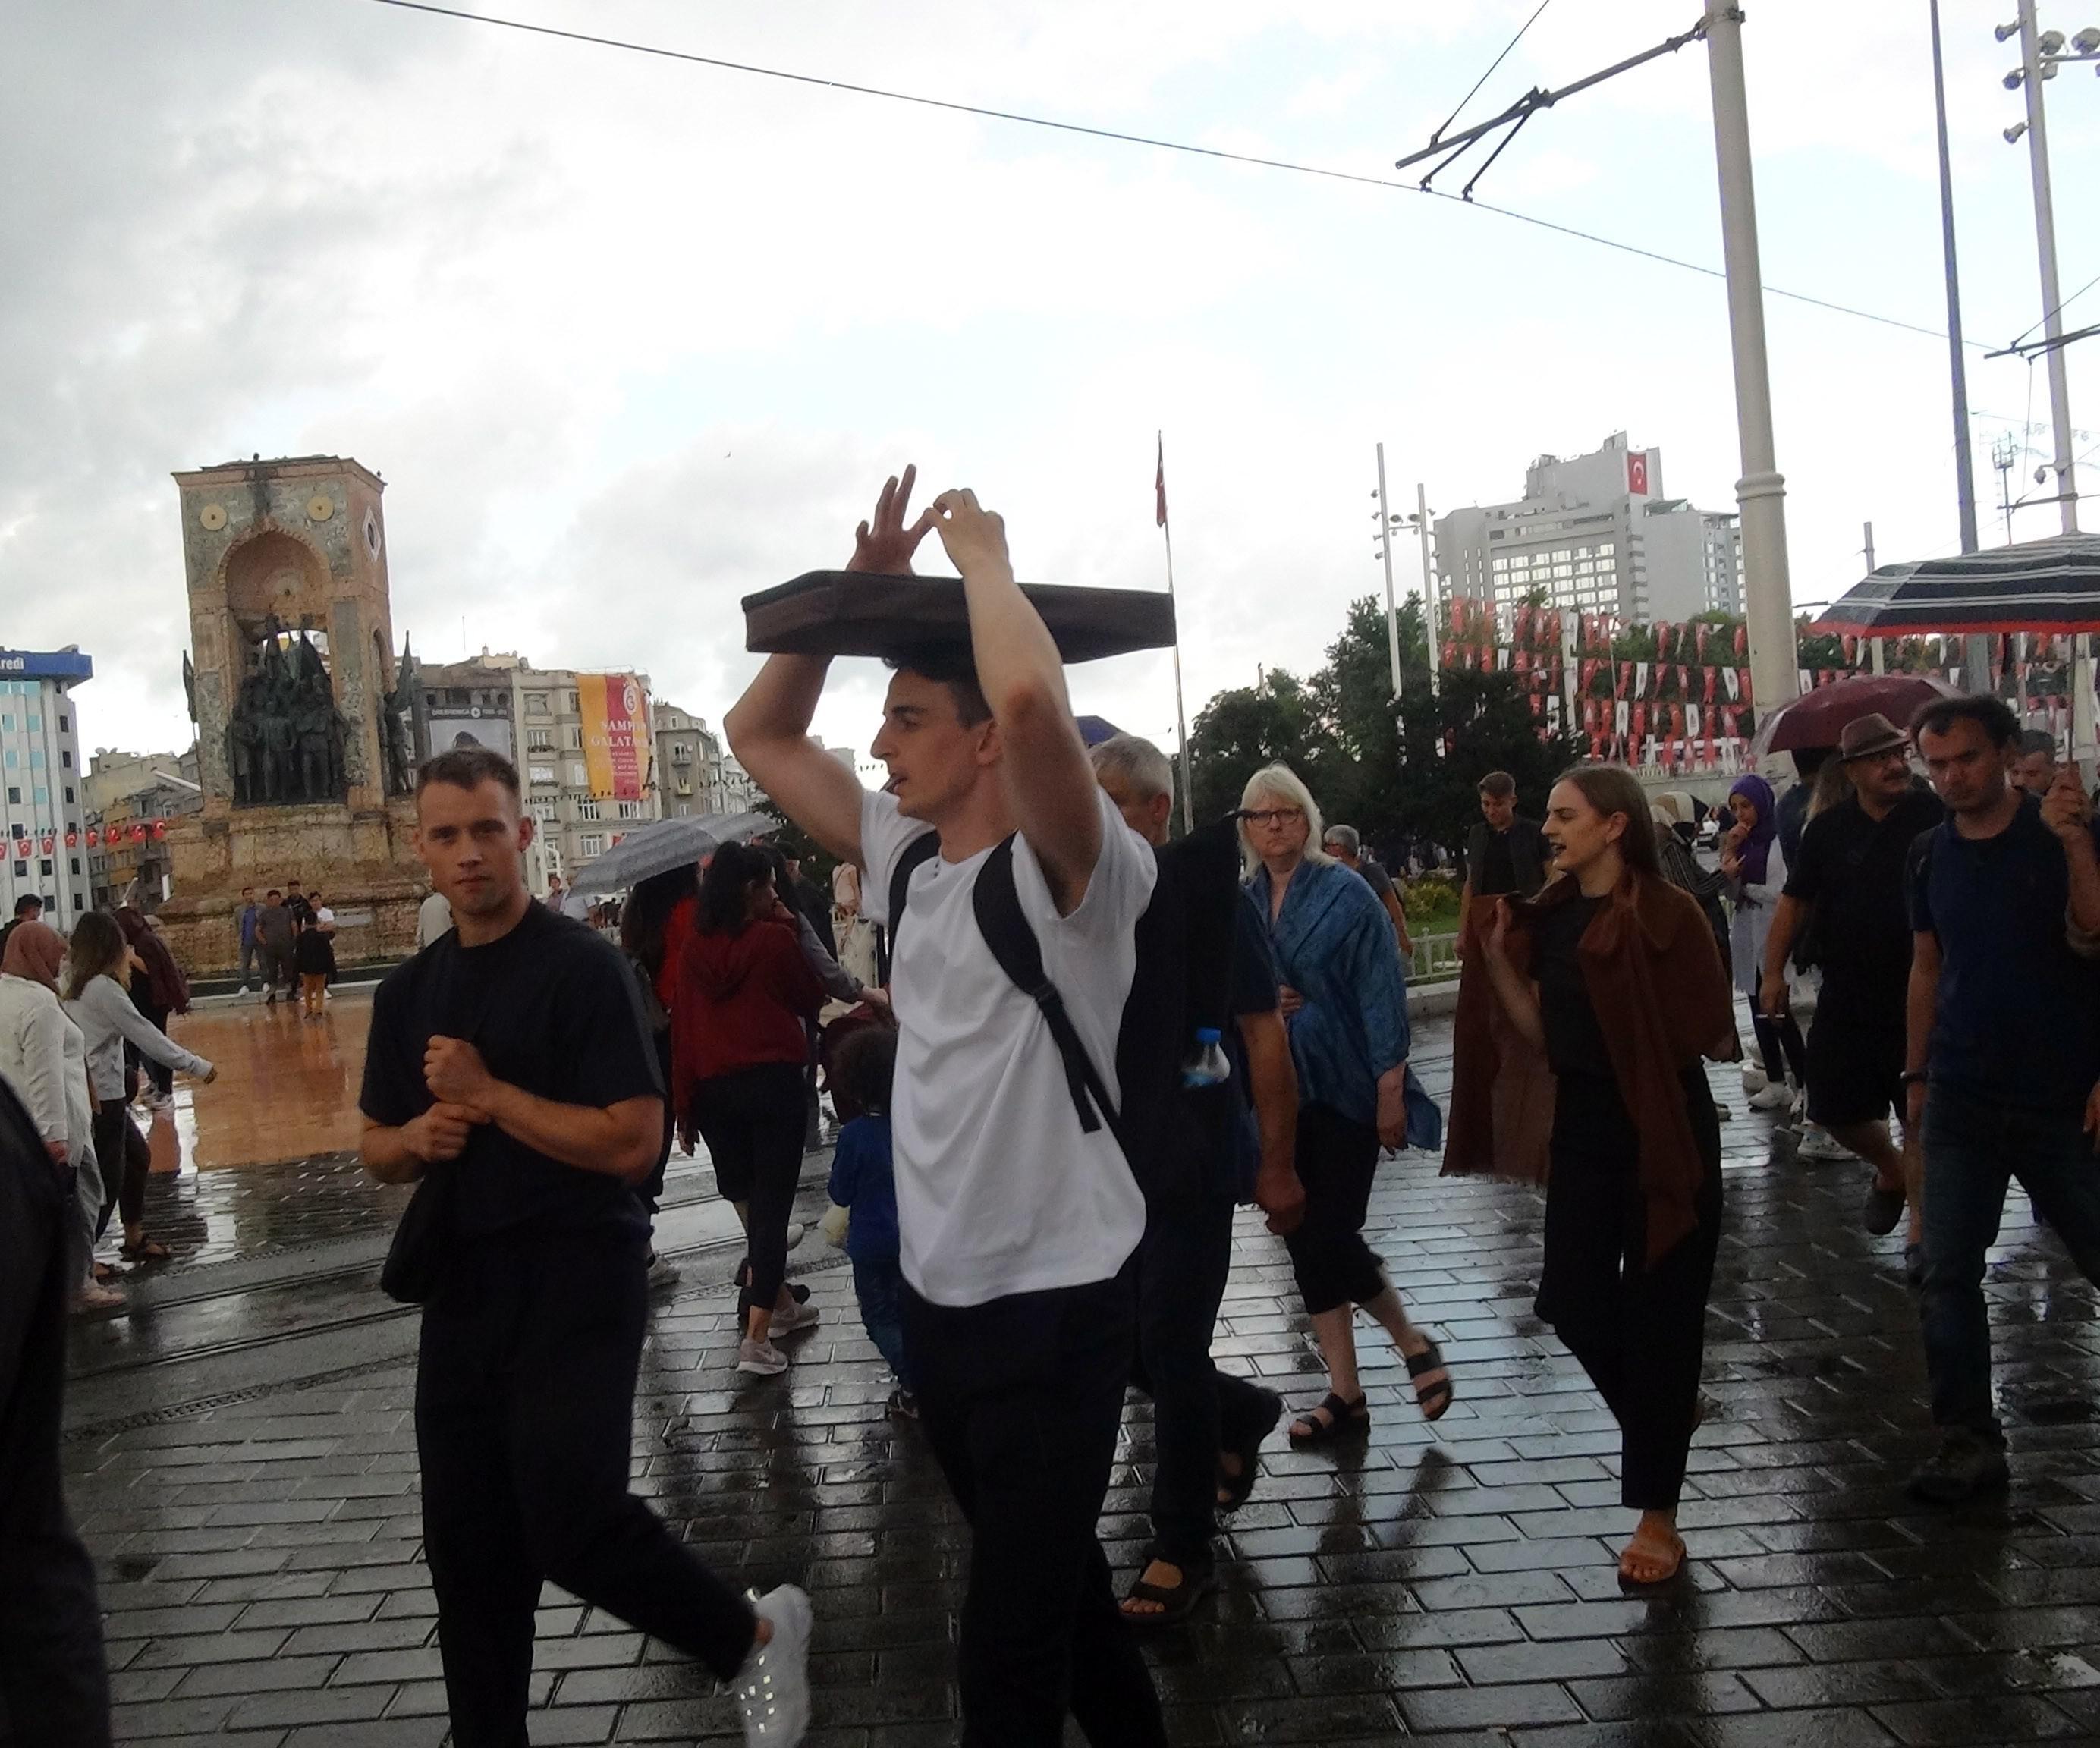 Taksimde vatandaşlar yağmura hazırlıksız yakalandı